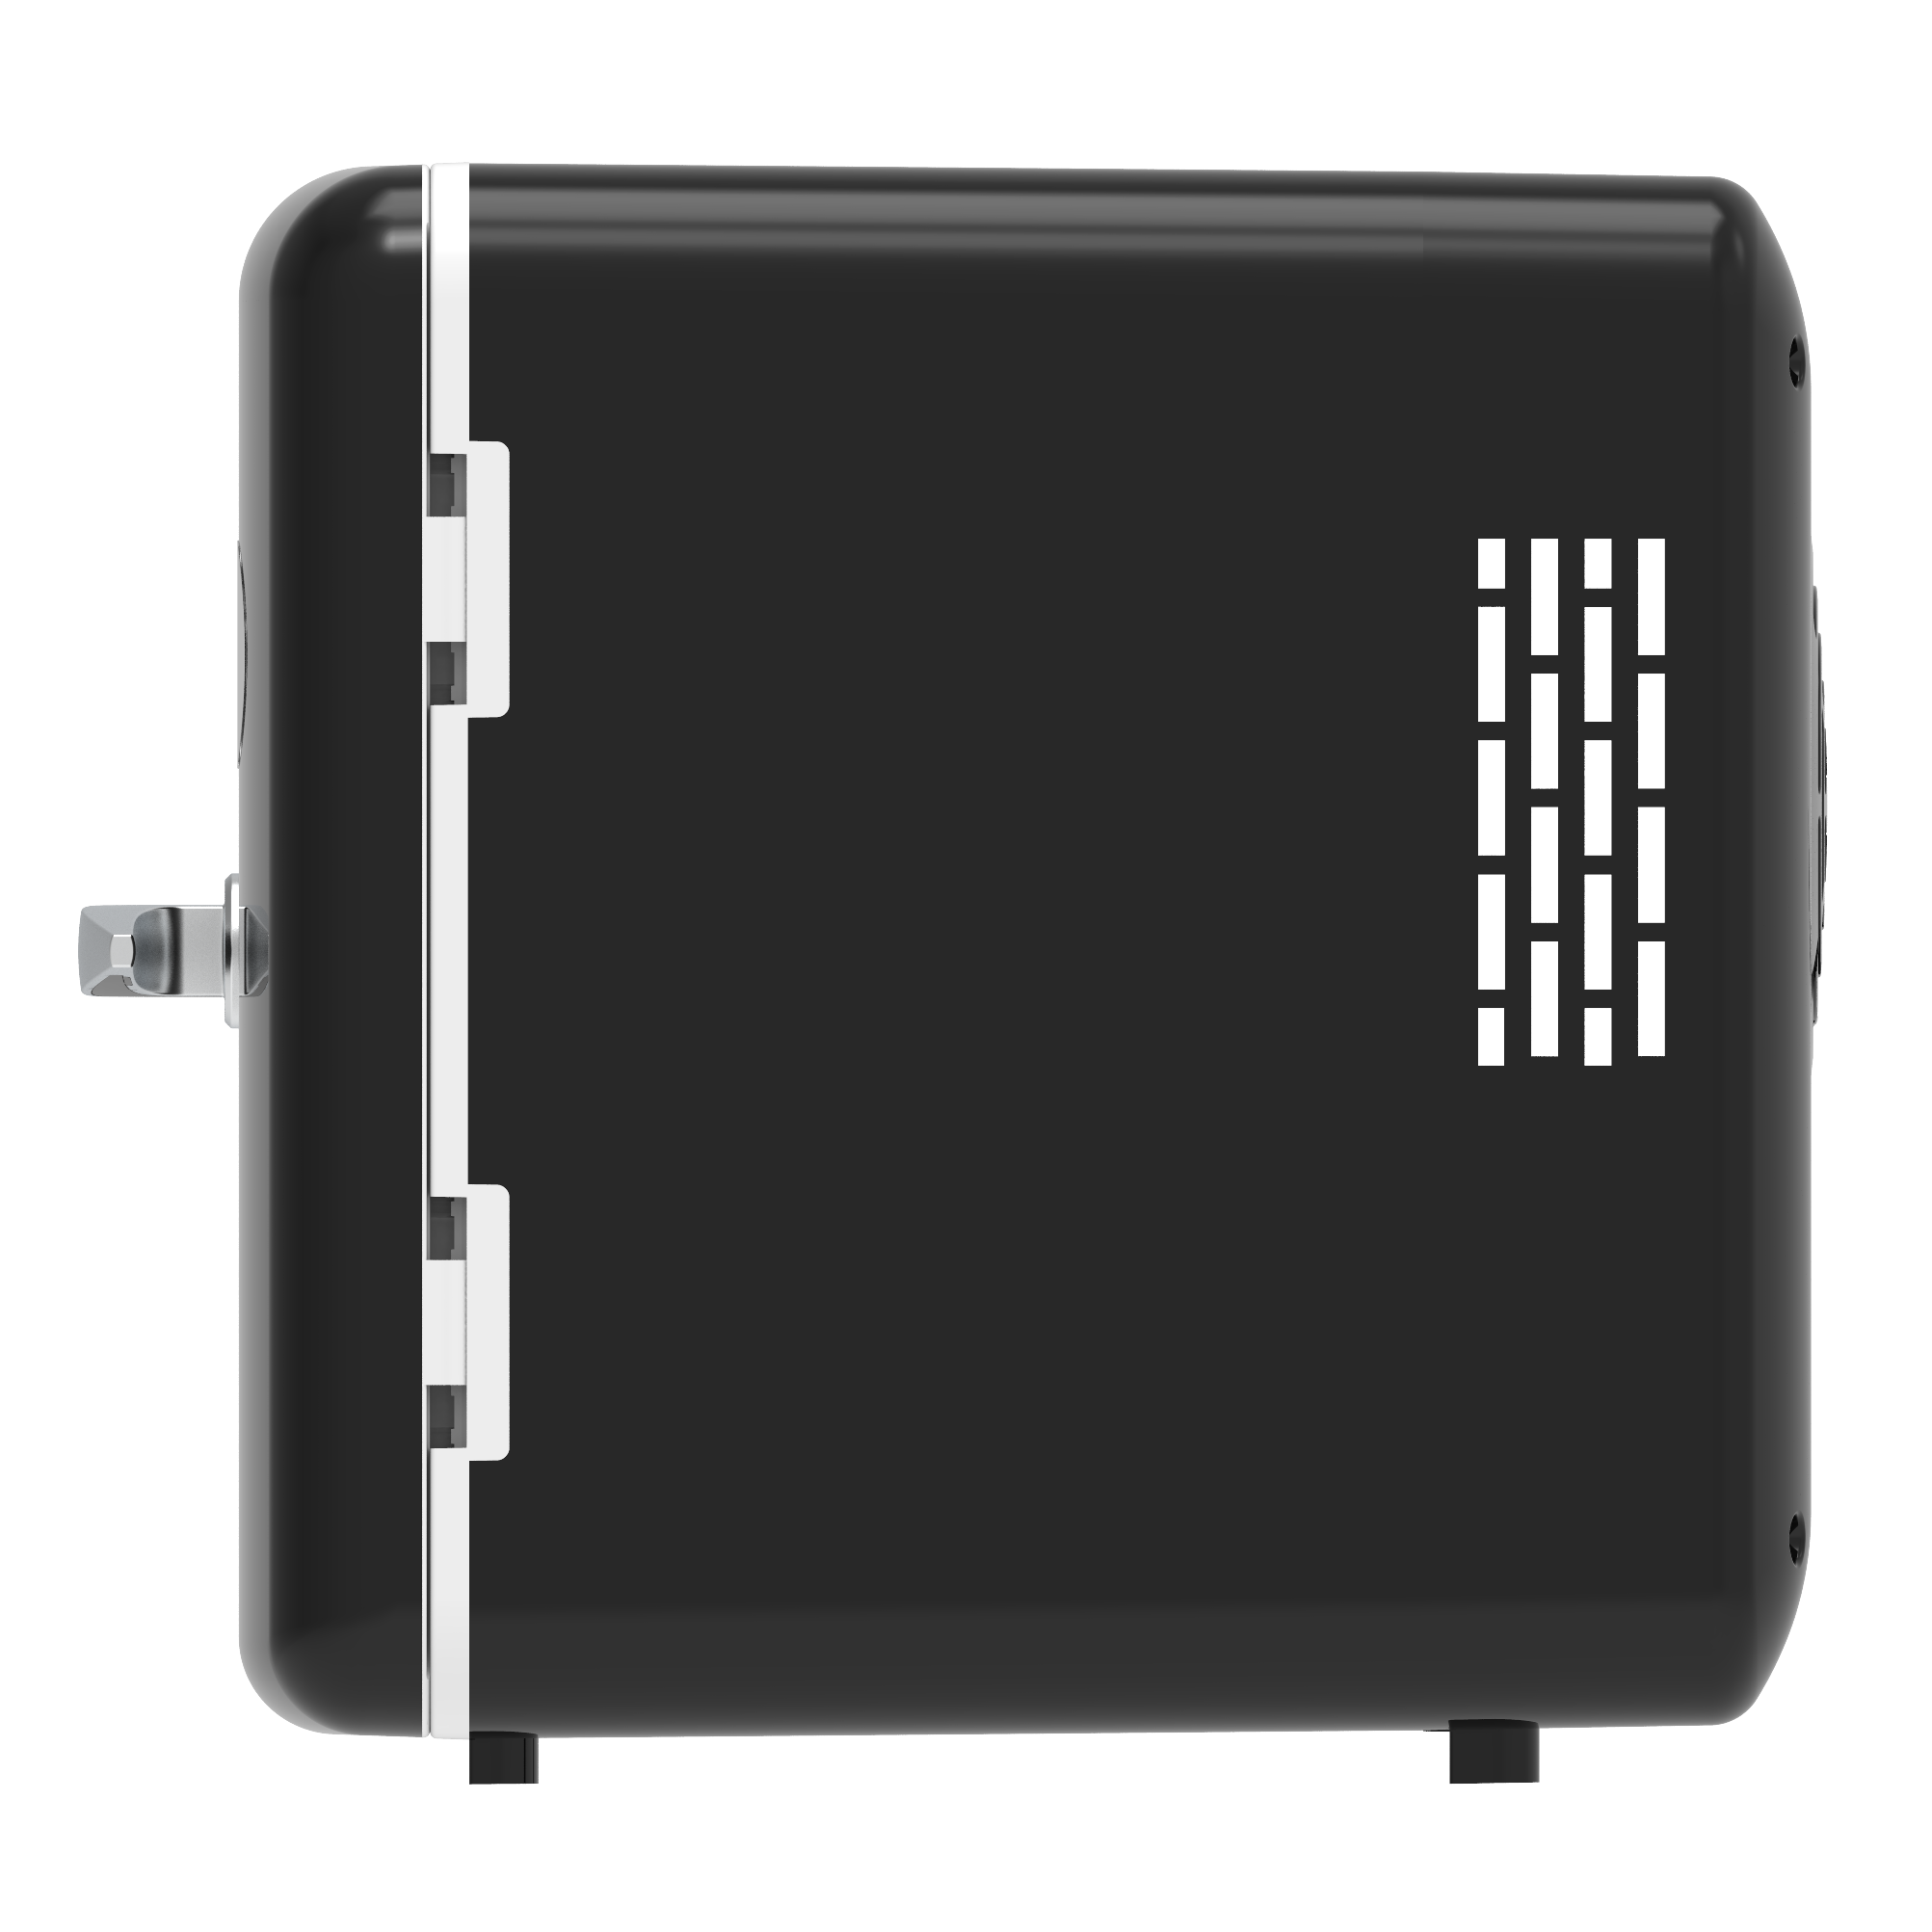 Frigidaire Retro 6-Can Mini Cooler, Black, EFMIS175 - image 3 of 11